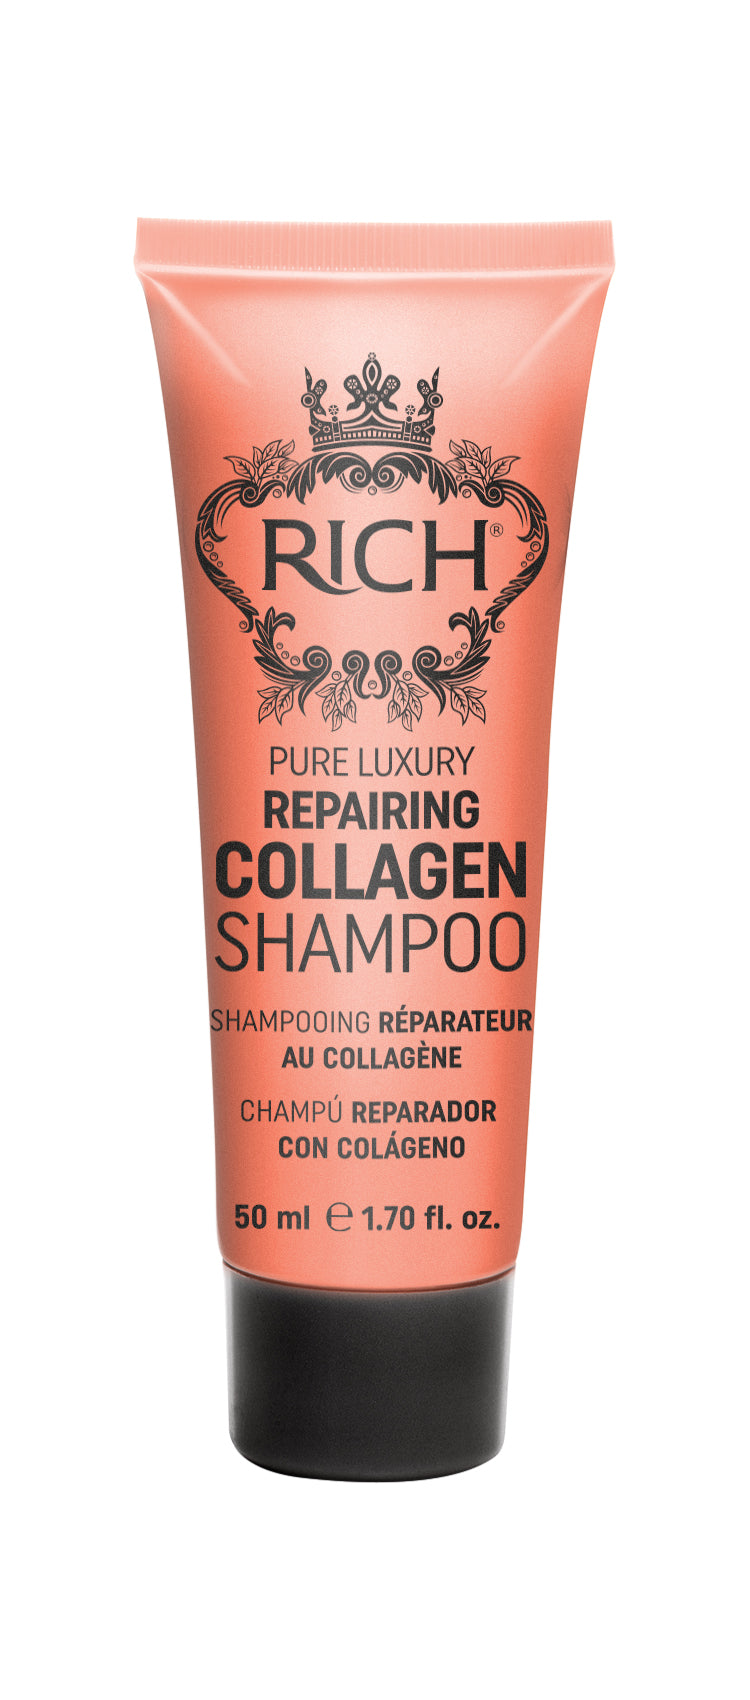 RICH Rich collagen restoring shampoo